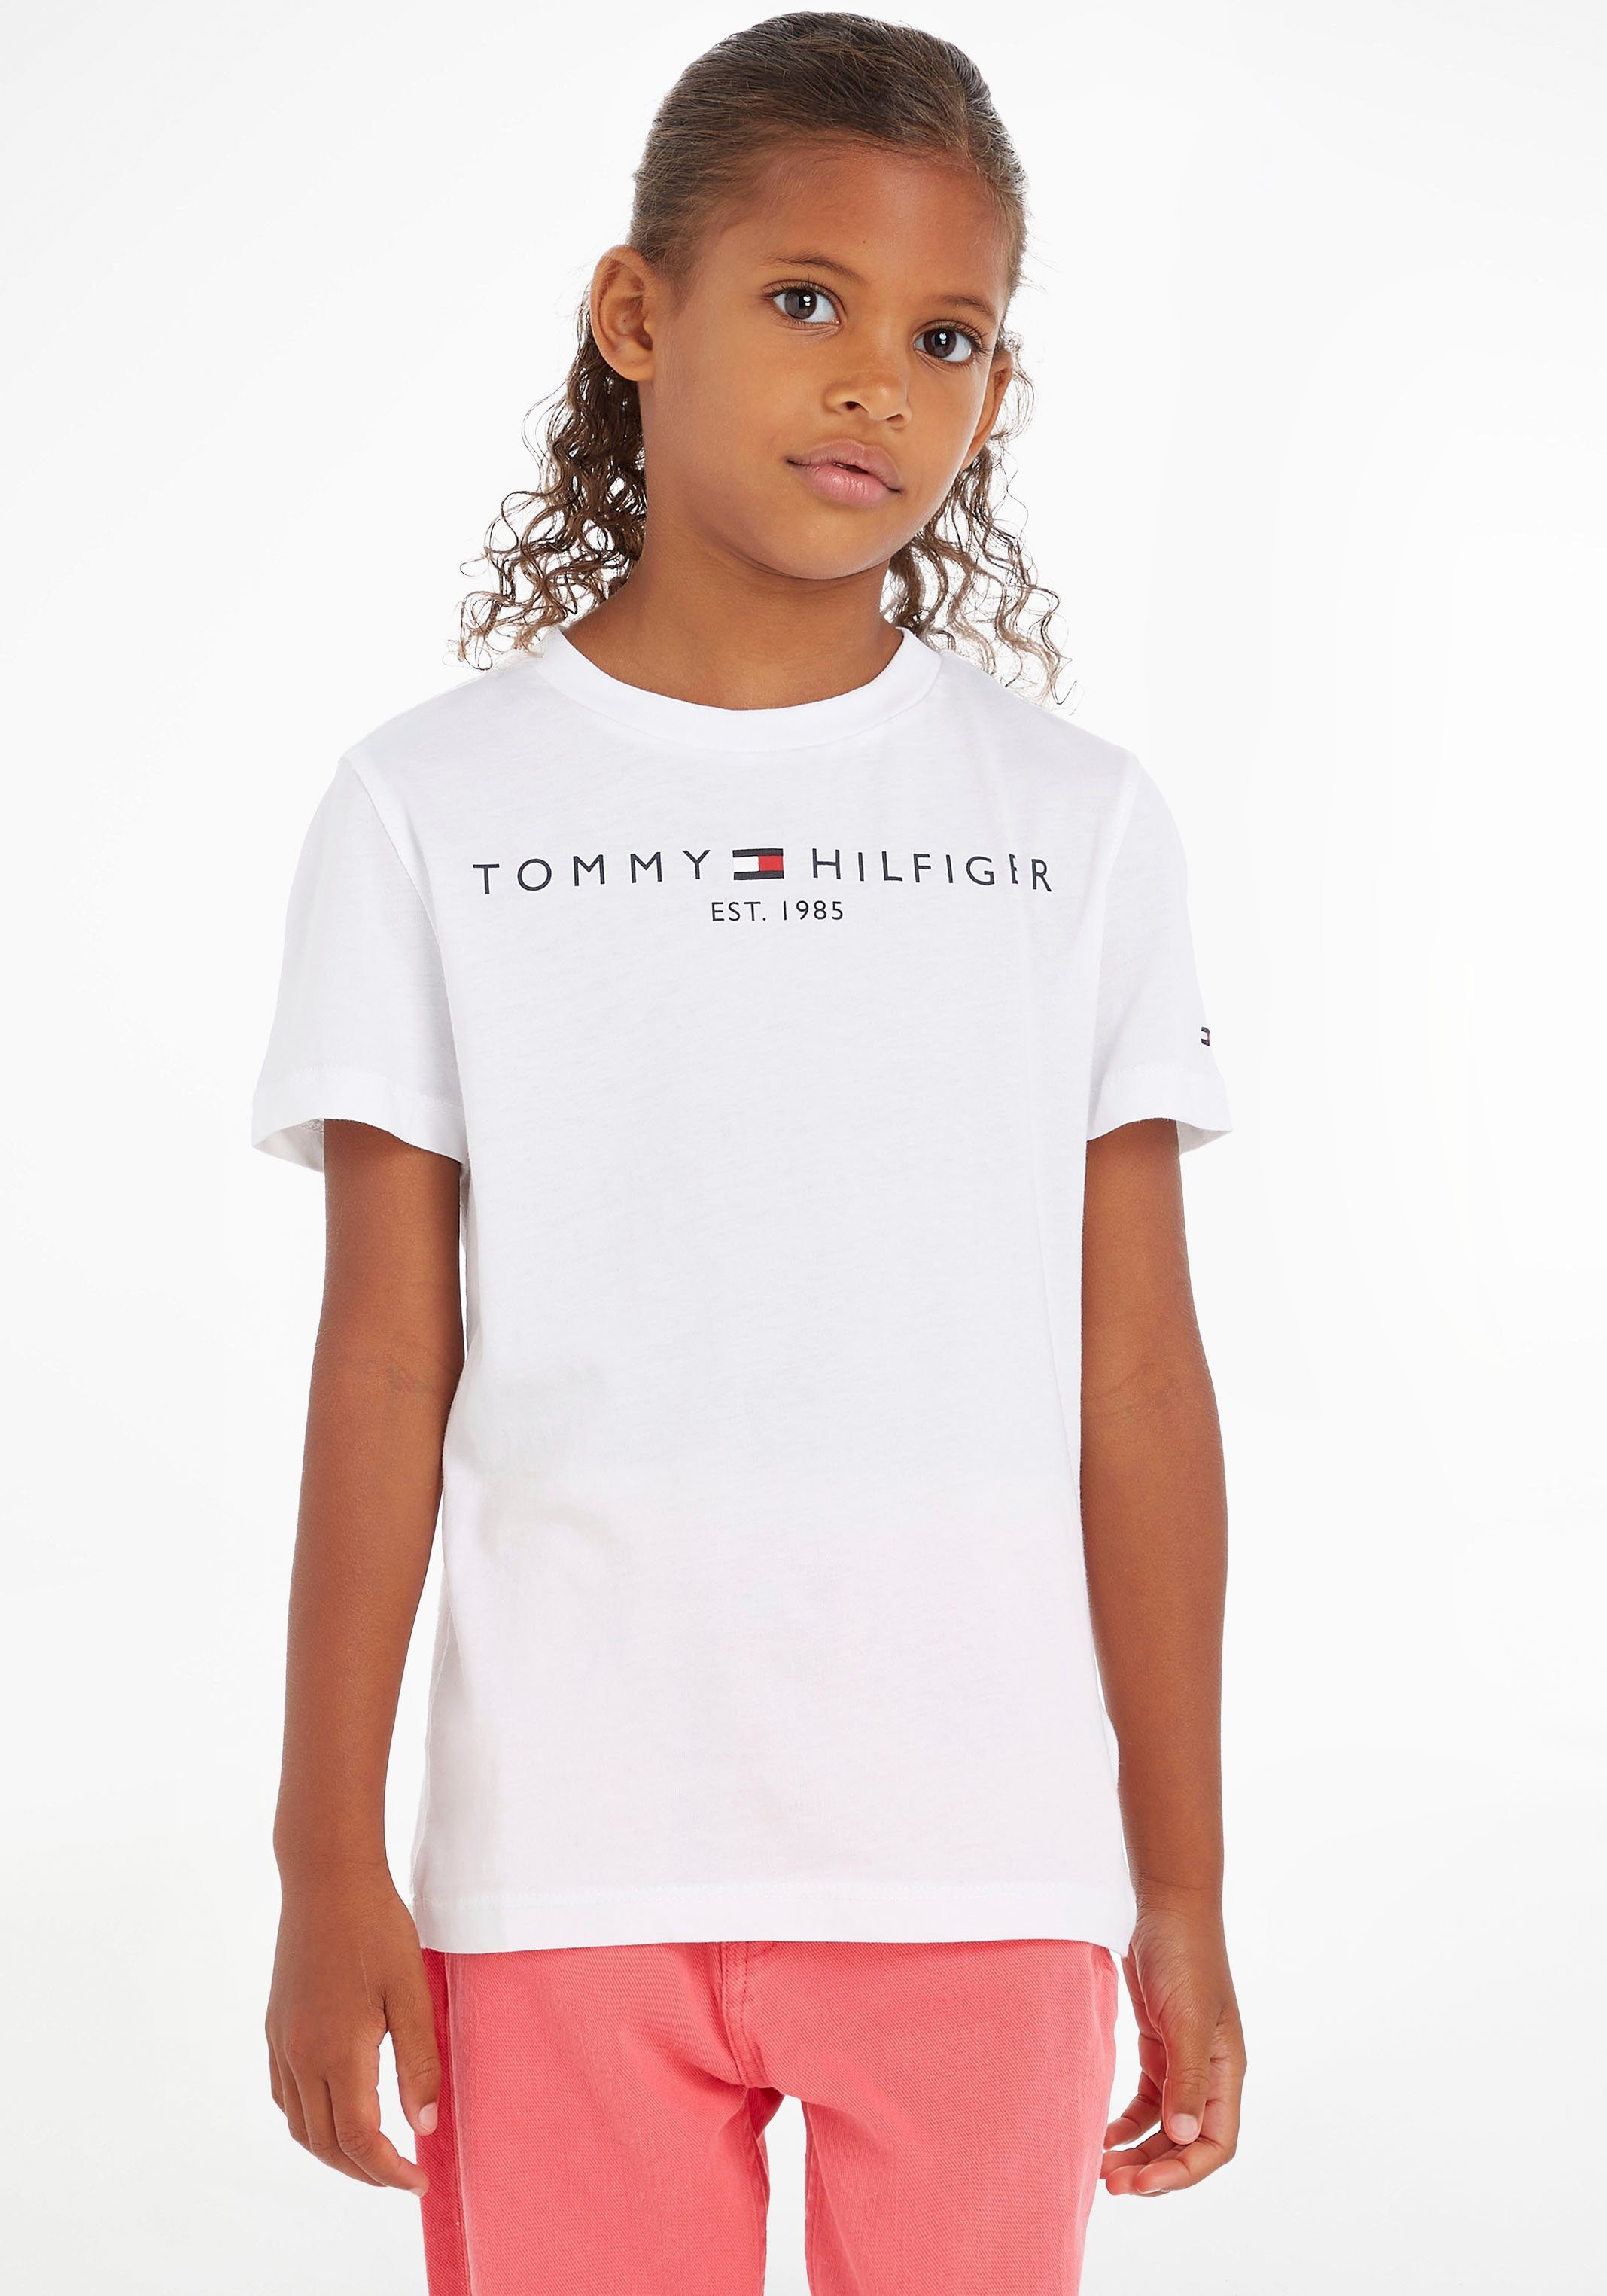 Tommy Hilfiger T-Shirt ESSENTIAL Kids TEE Mädchen Junior Kinder Jungen und MiniMe,für